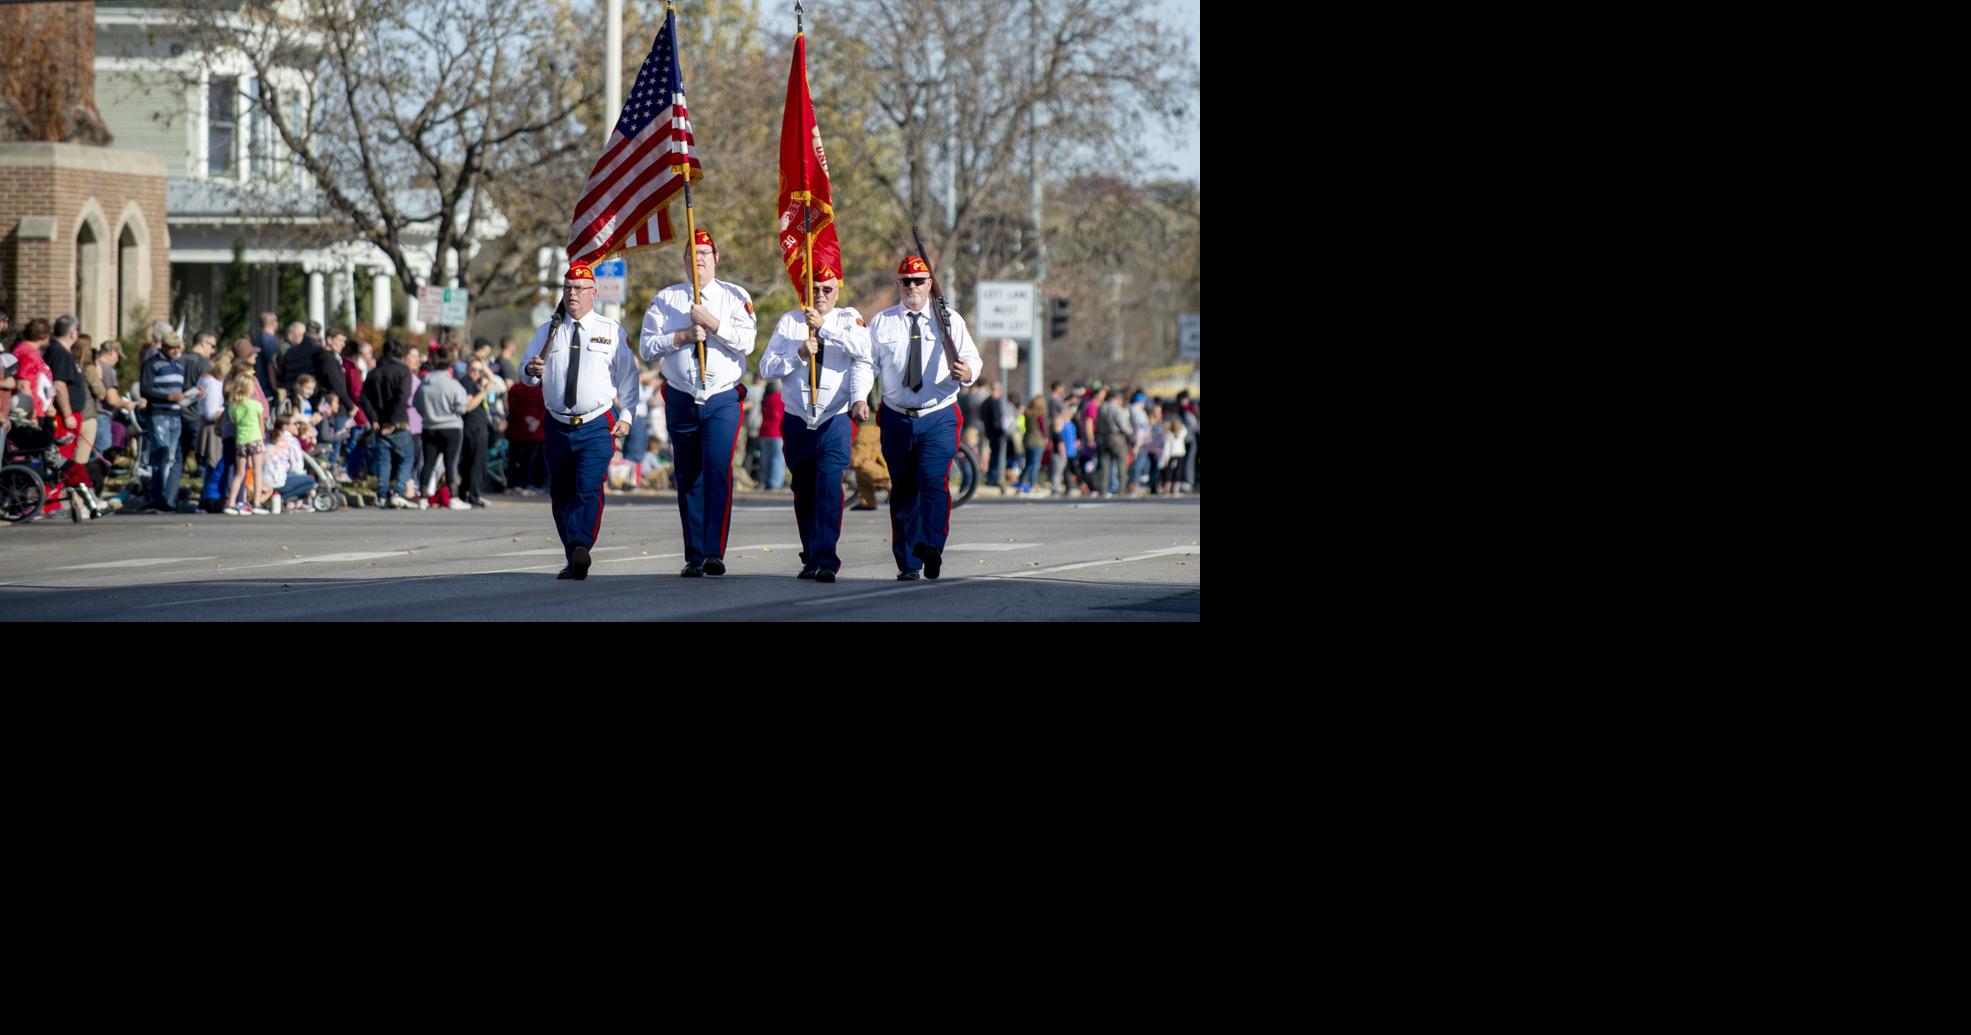 Lincoln Veterans Day parade still on